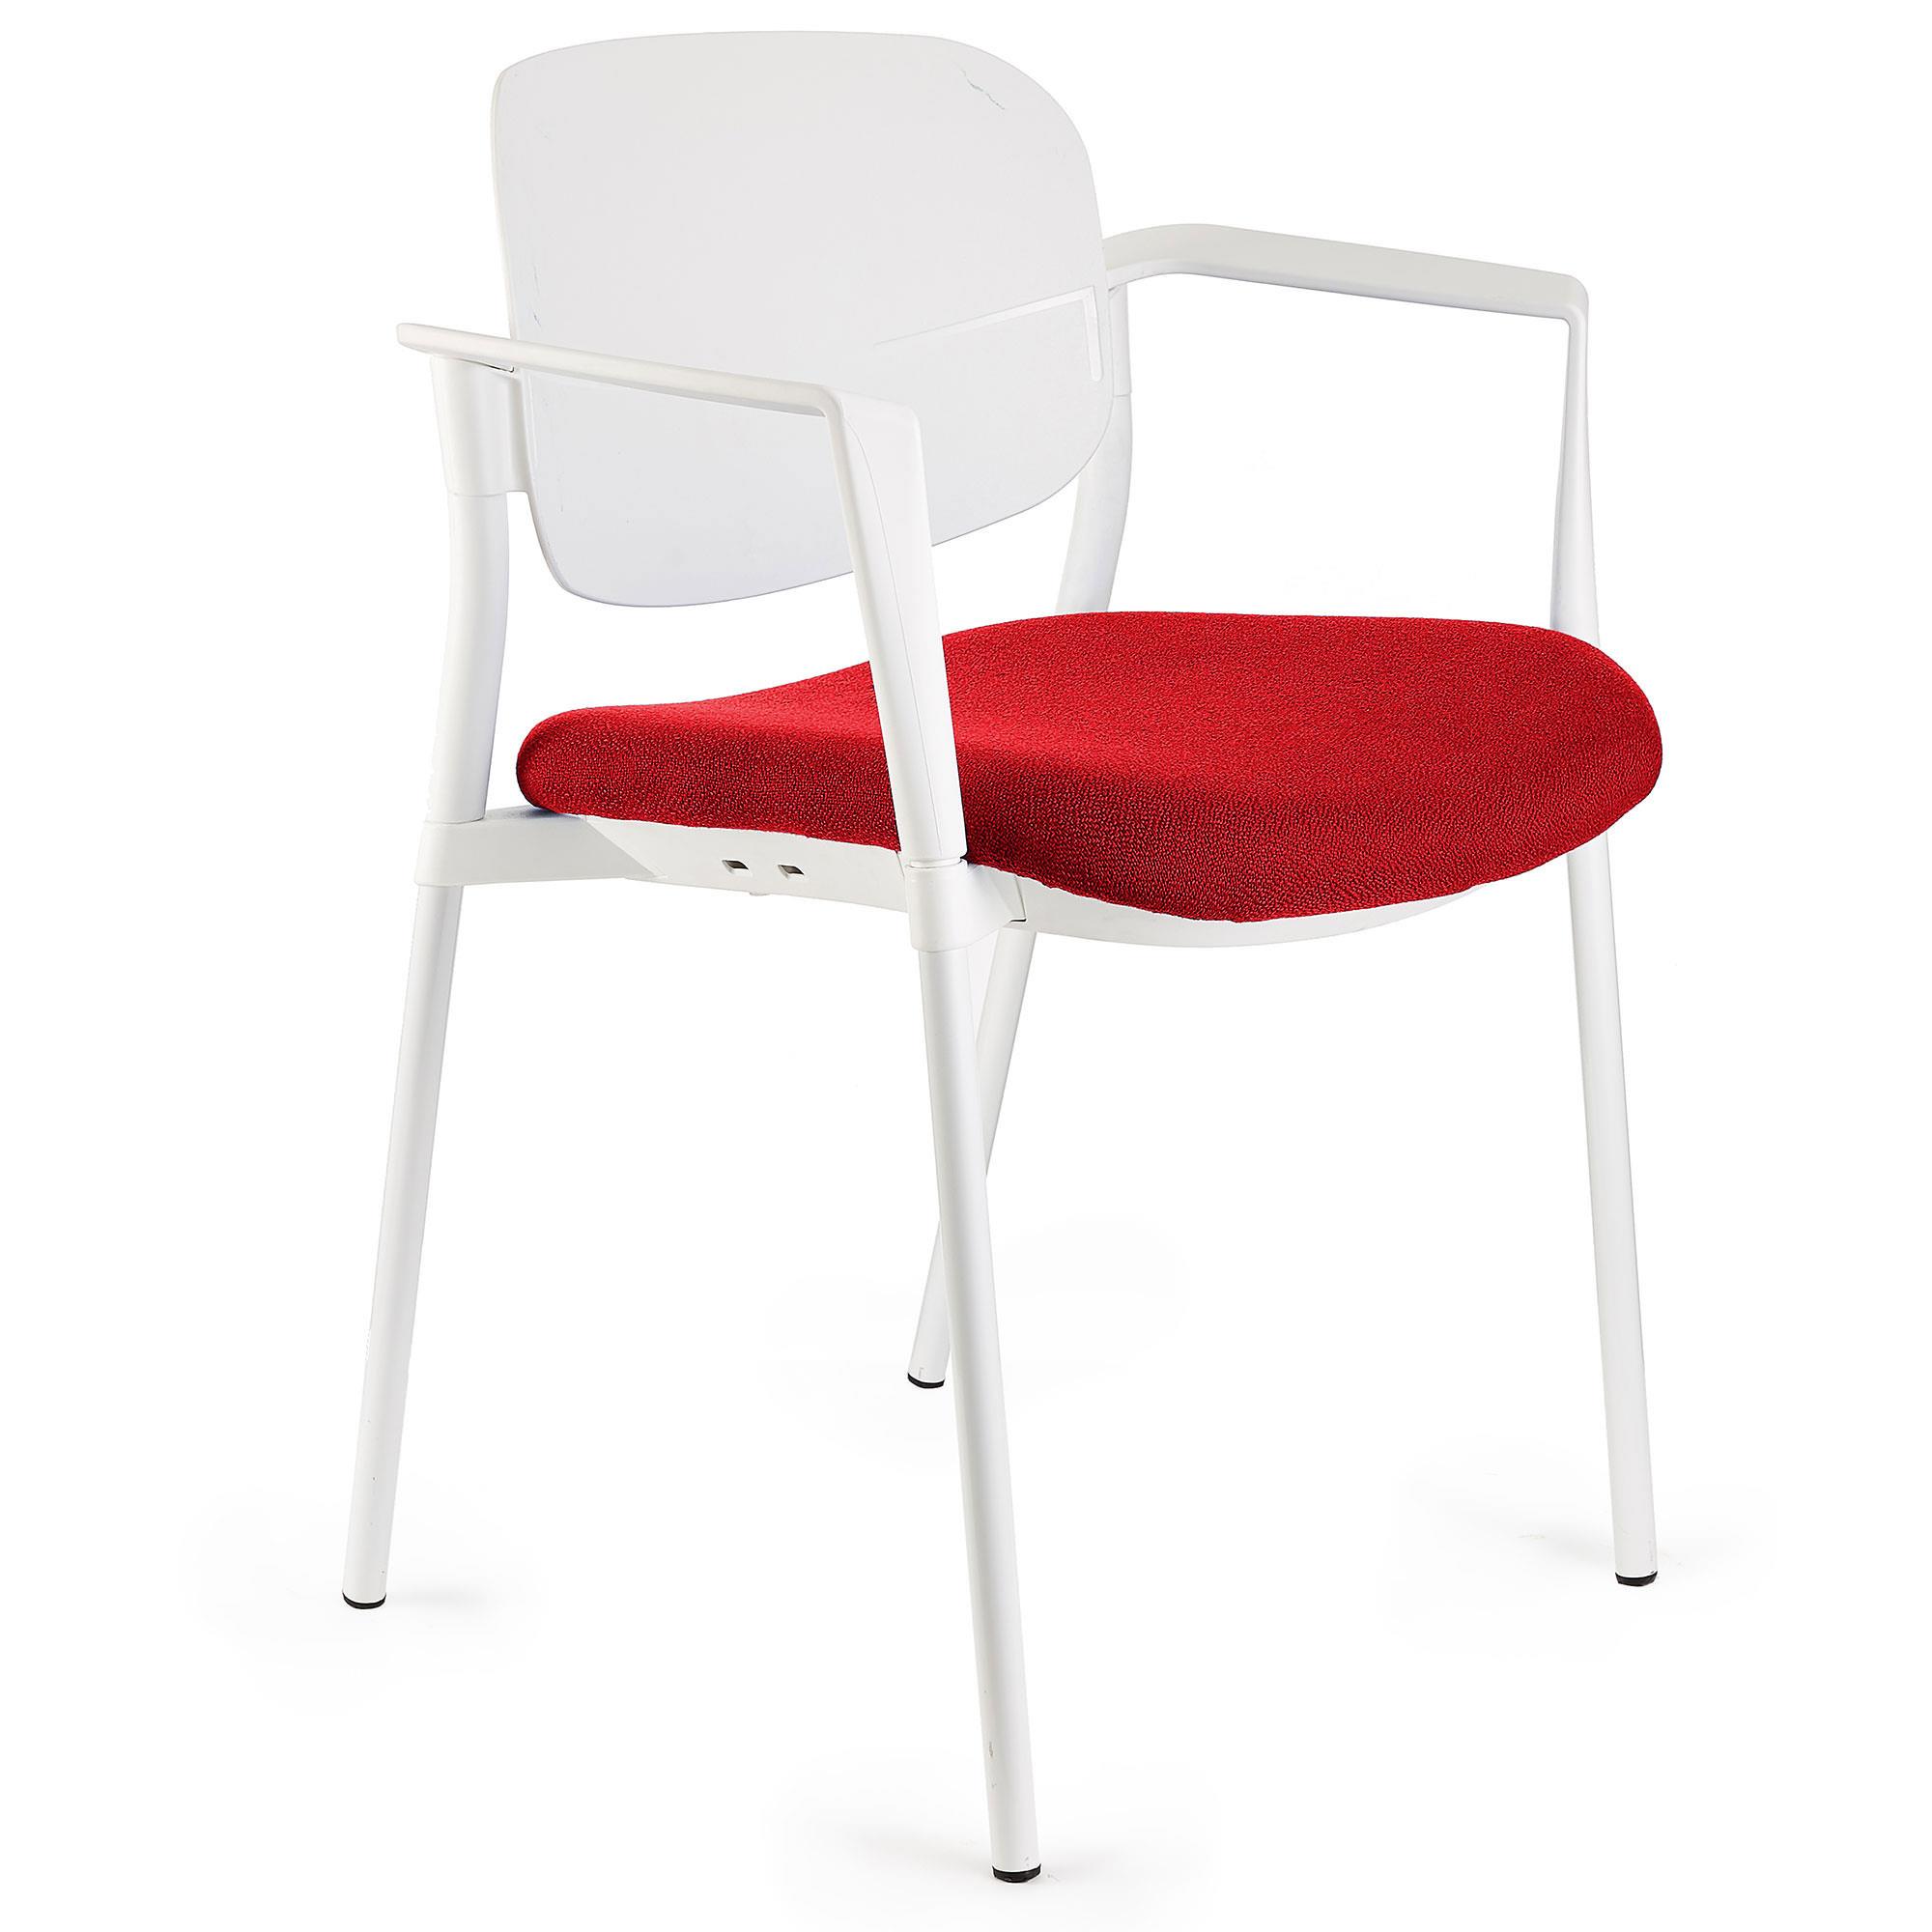 Cadeira de Visita ERIC COM BRAÇOS, Confortável e Empilhável, Cor Vermelho